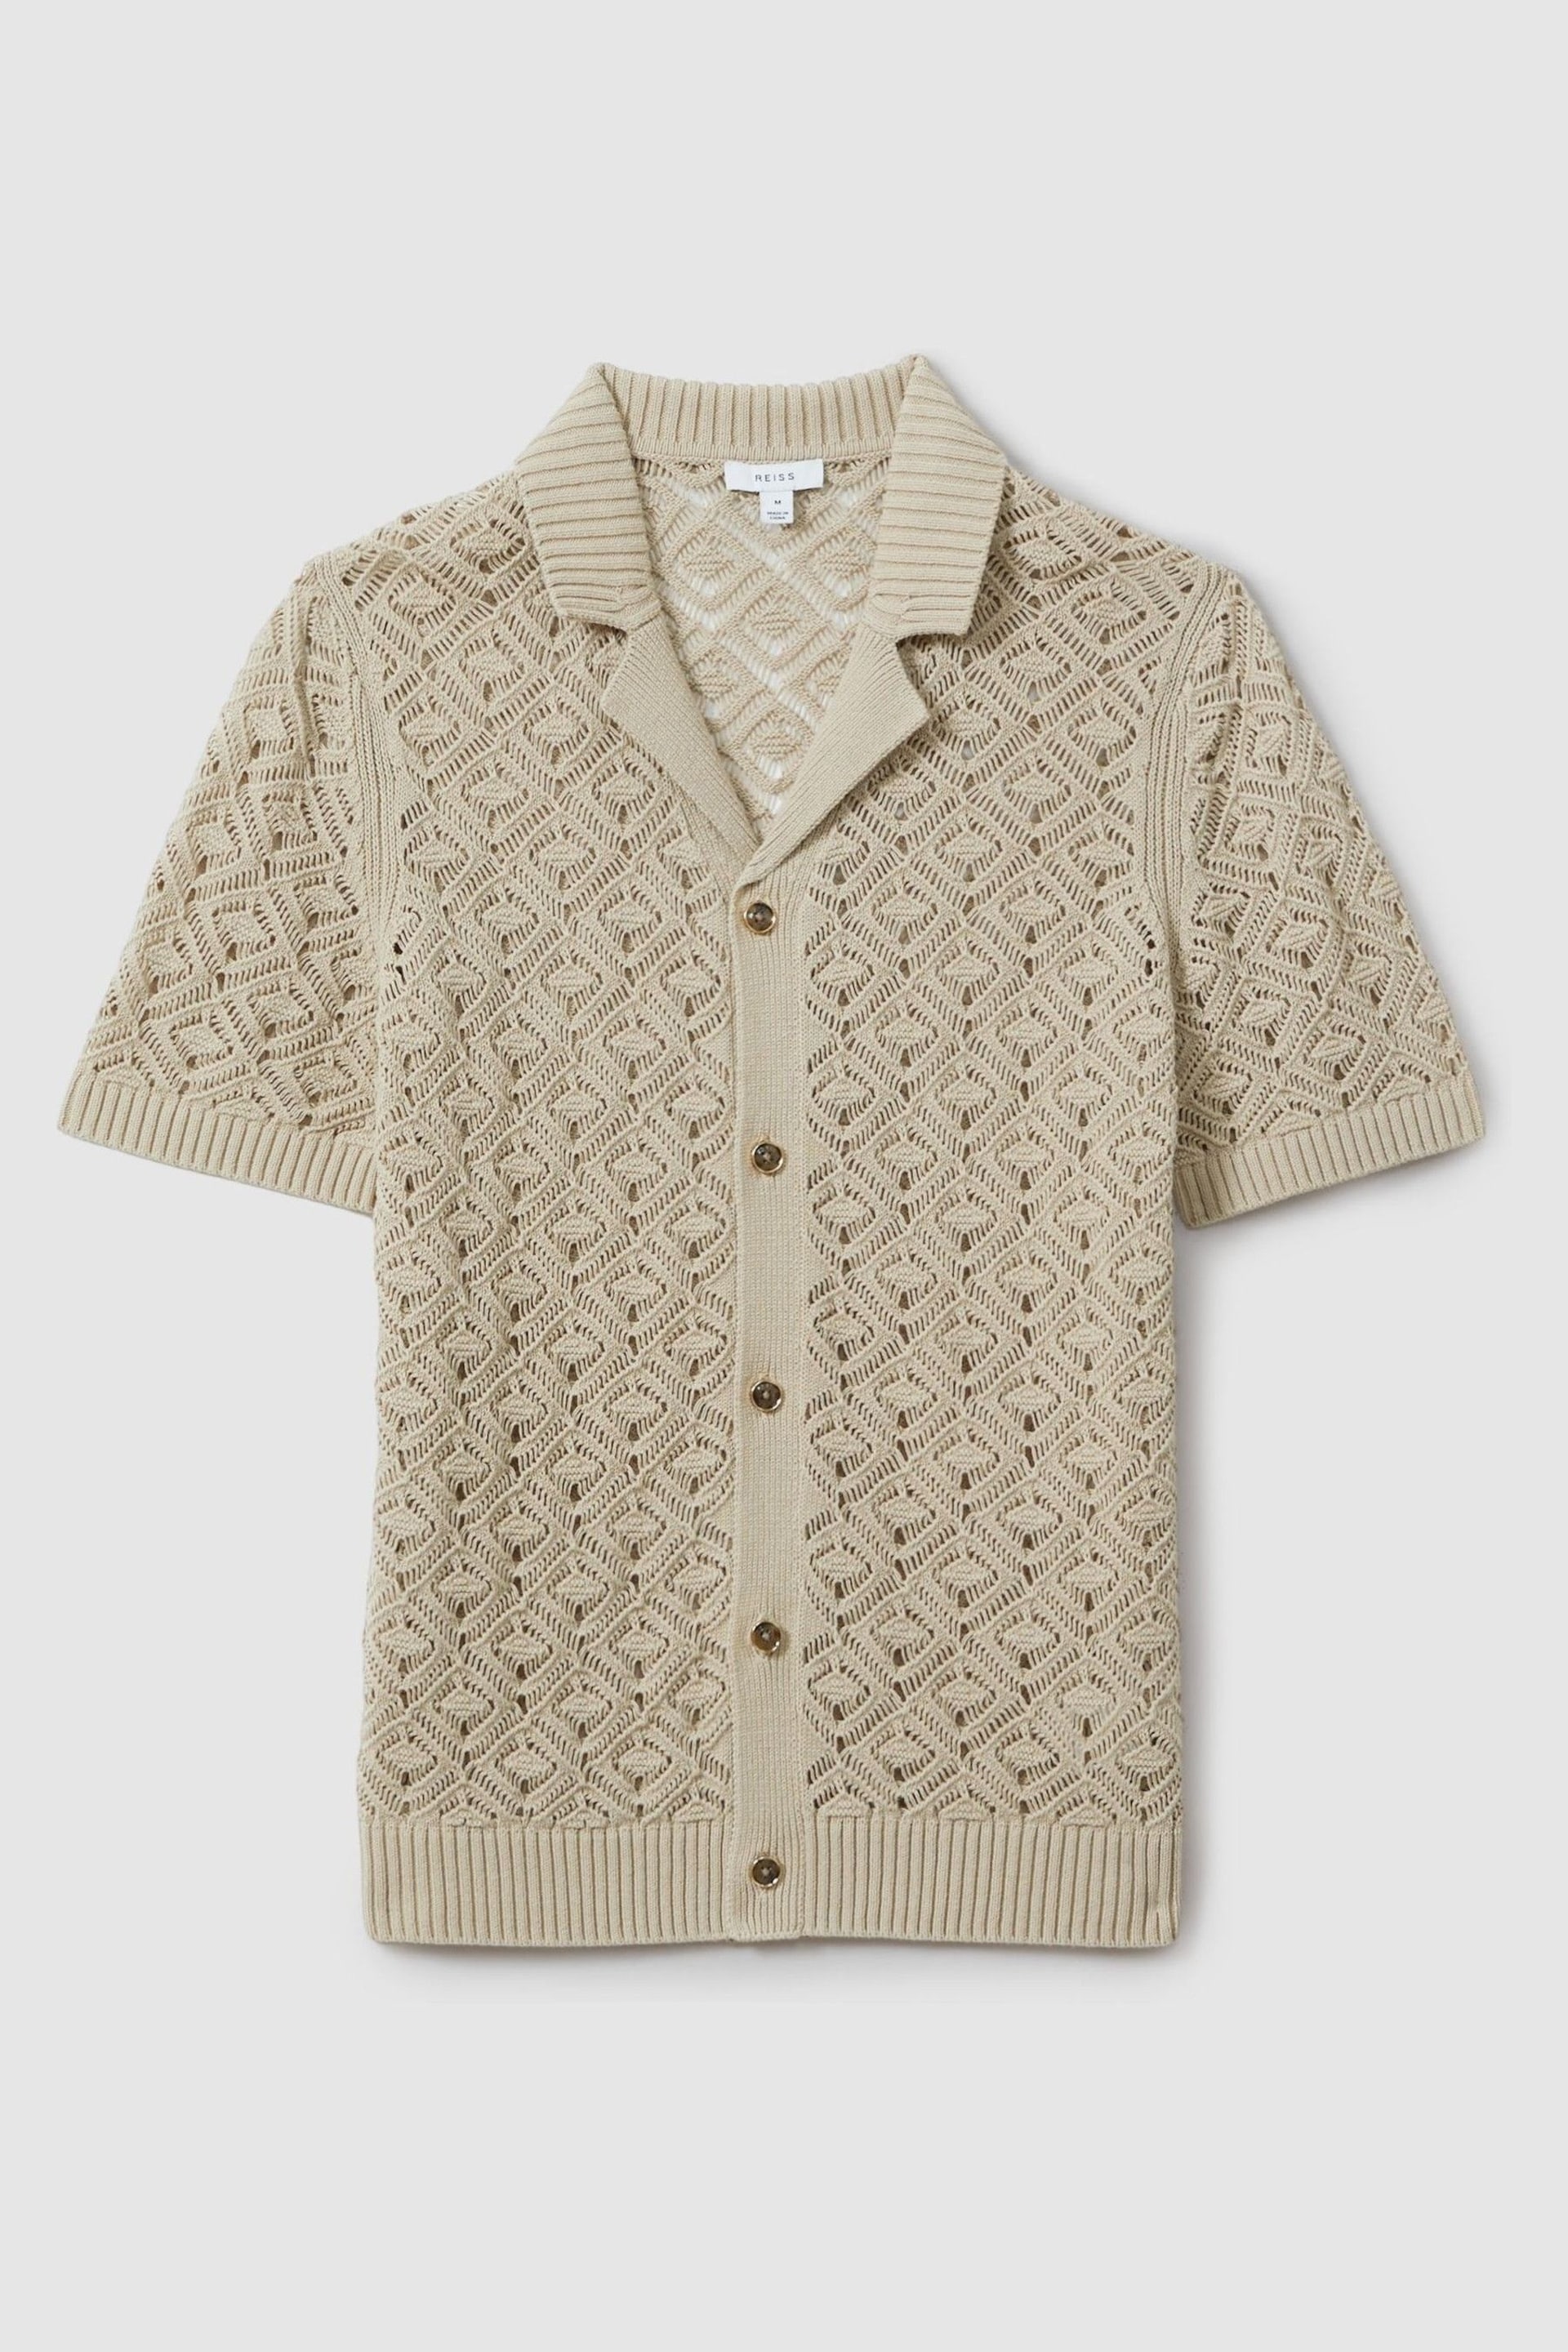 Reiss Stone Corsica Crochet Cuban Collar Shirt - Image 2 of 6